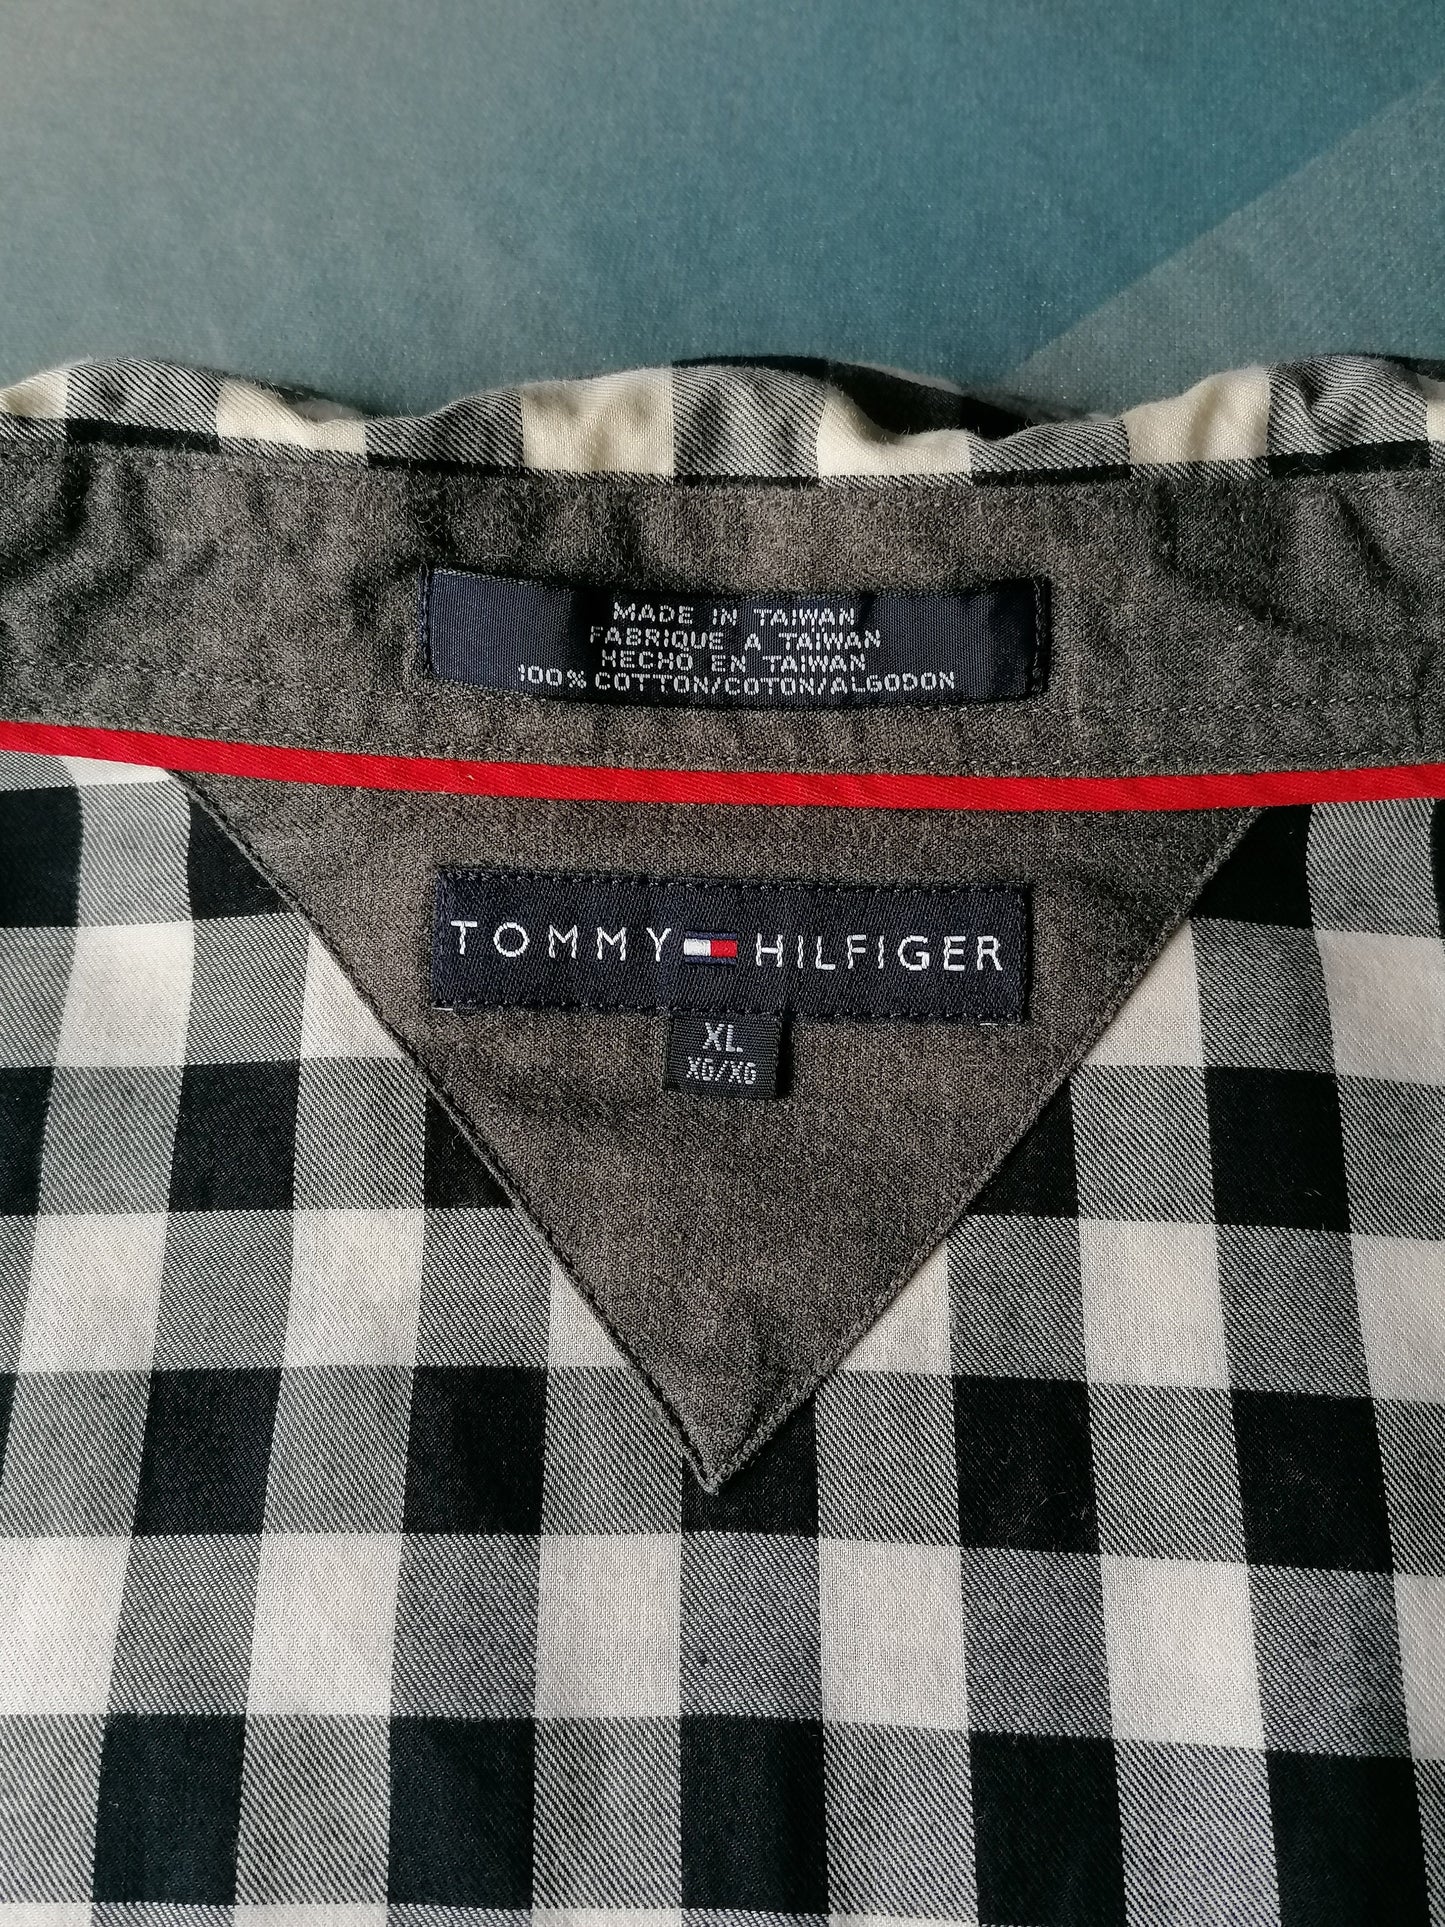 Tommy Hilfiger-Hemd mit Druckknöpfen. Schwarzweiß kariert. Größe XL.